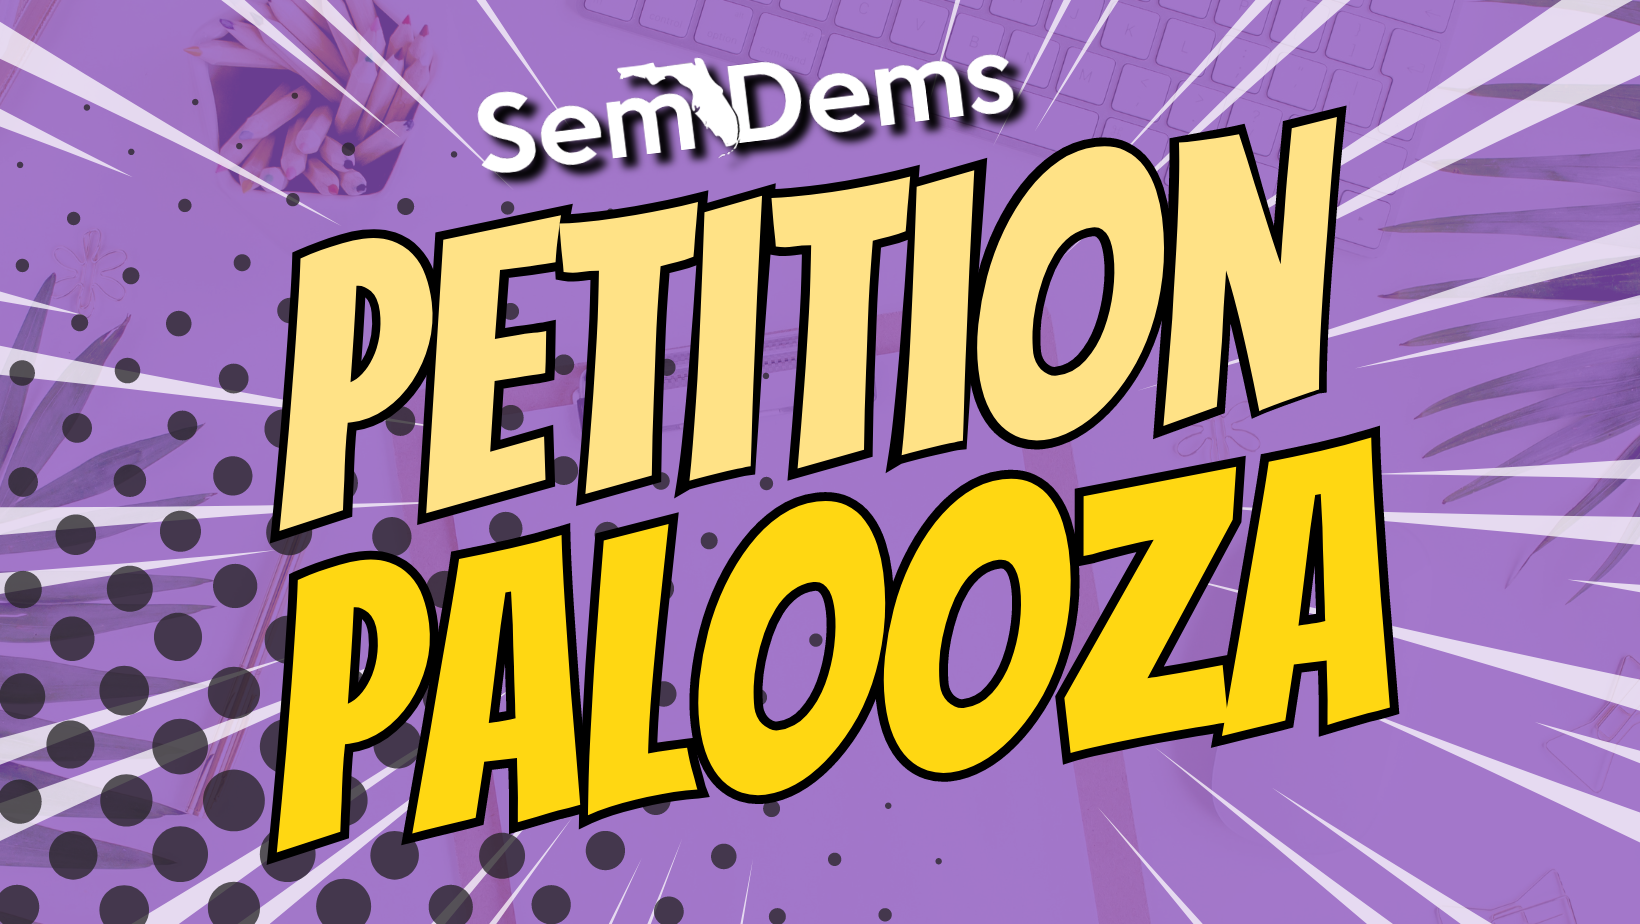 SemDems Petition Palooza